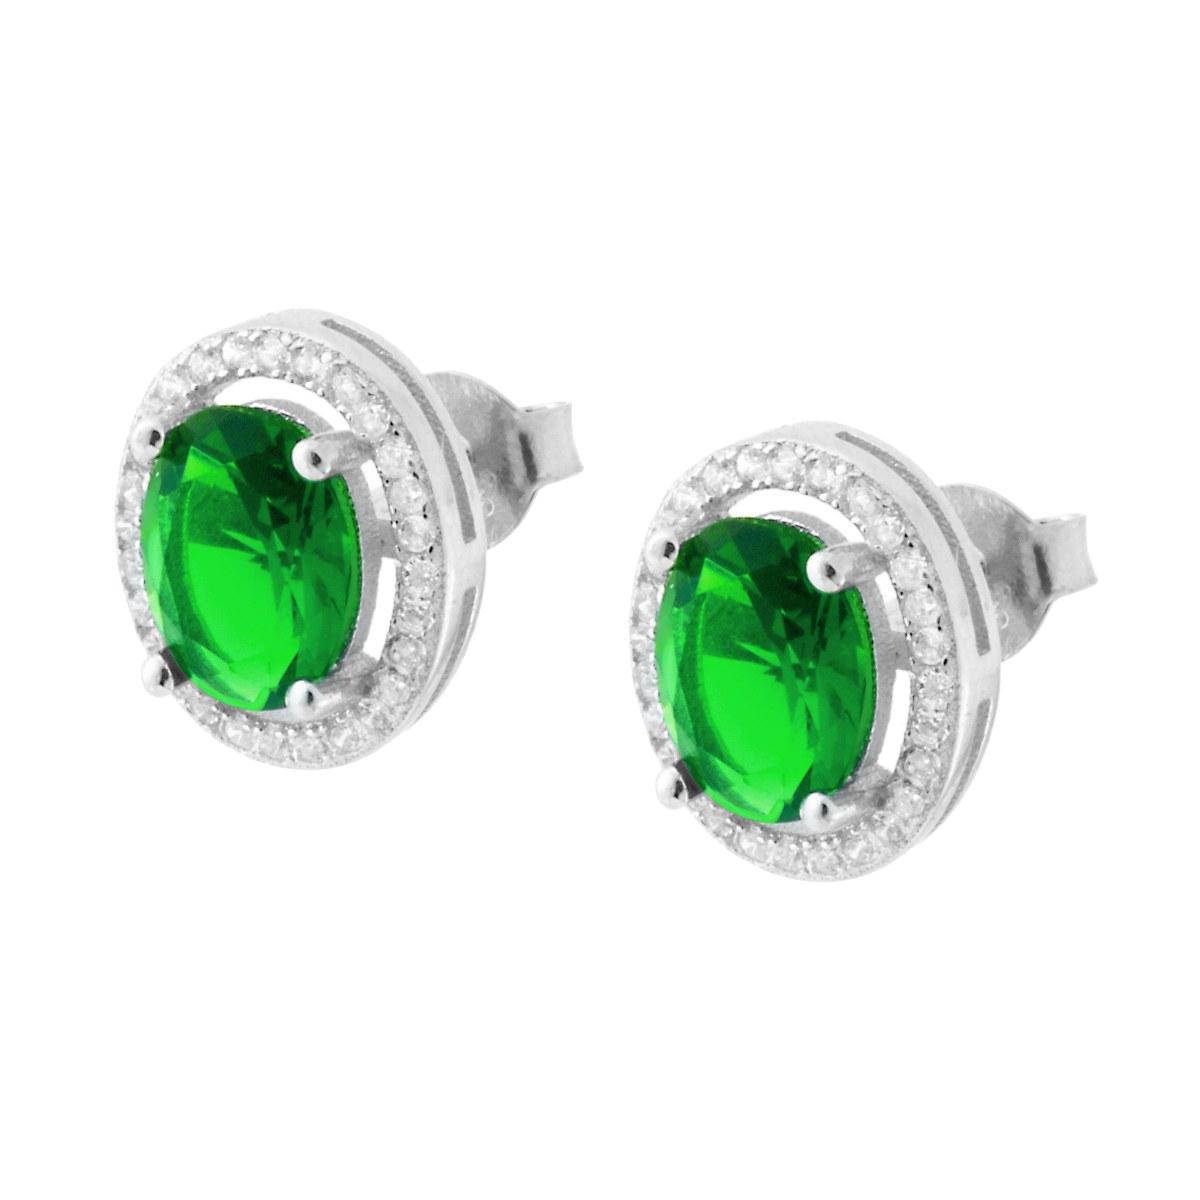 Orecchini con Zircone Ovale Verde Smeraldo contornato con Zirconi Bianchi in ARGENTO 925 Galvanica Rodio